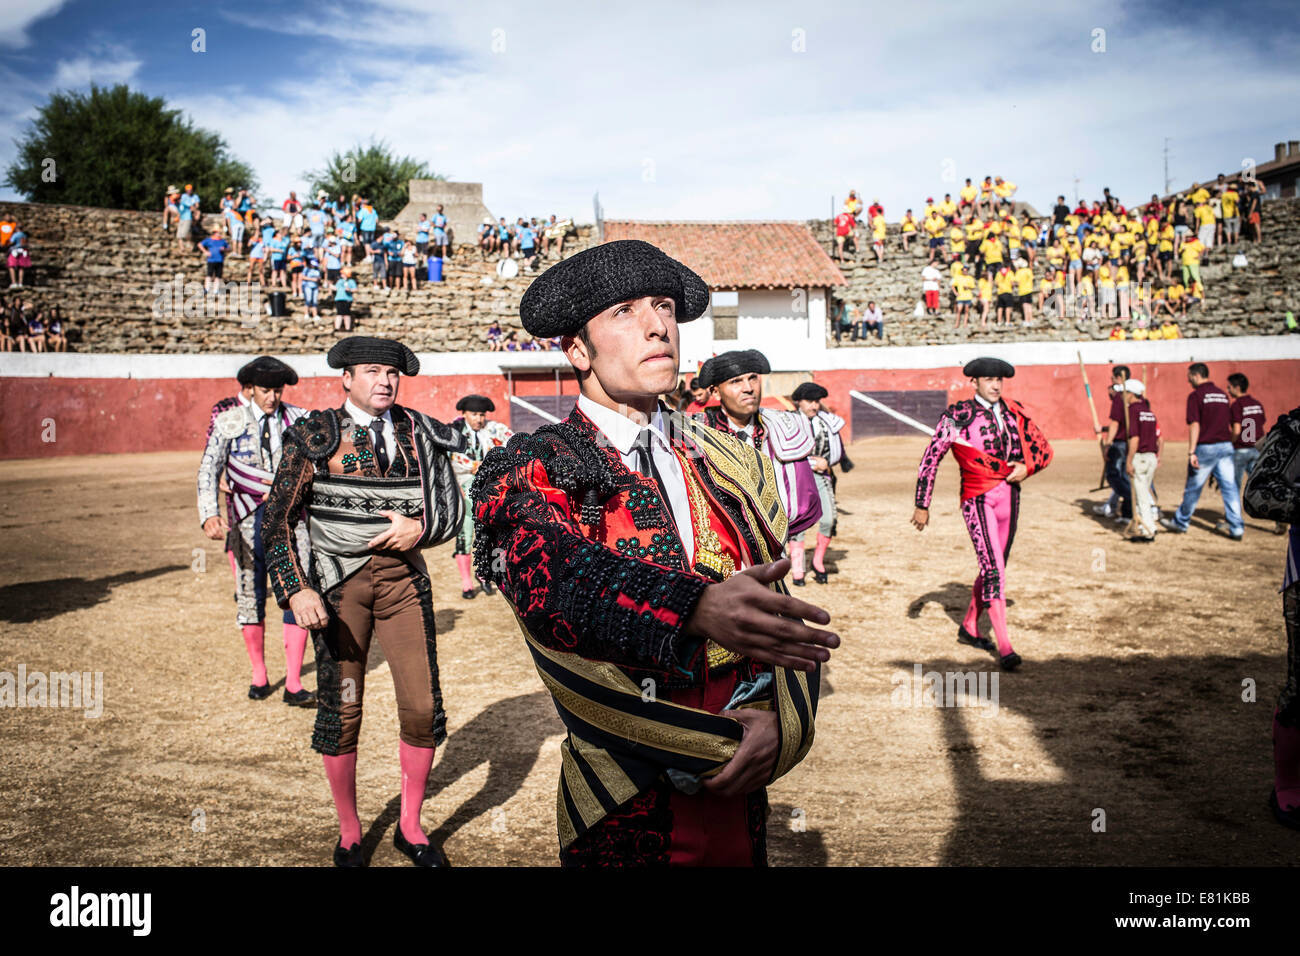 Matadors before a bullfight, Barco de Ávila, Avila, Castile and León, Spain Stock Photo